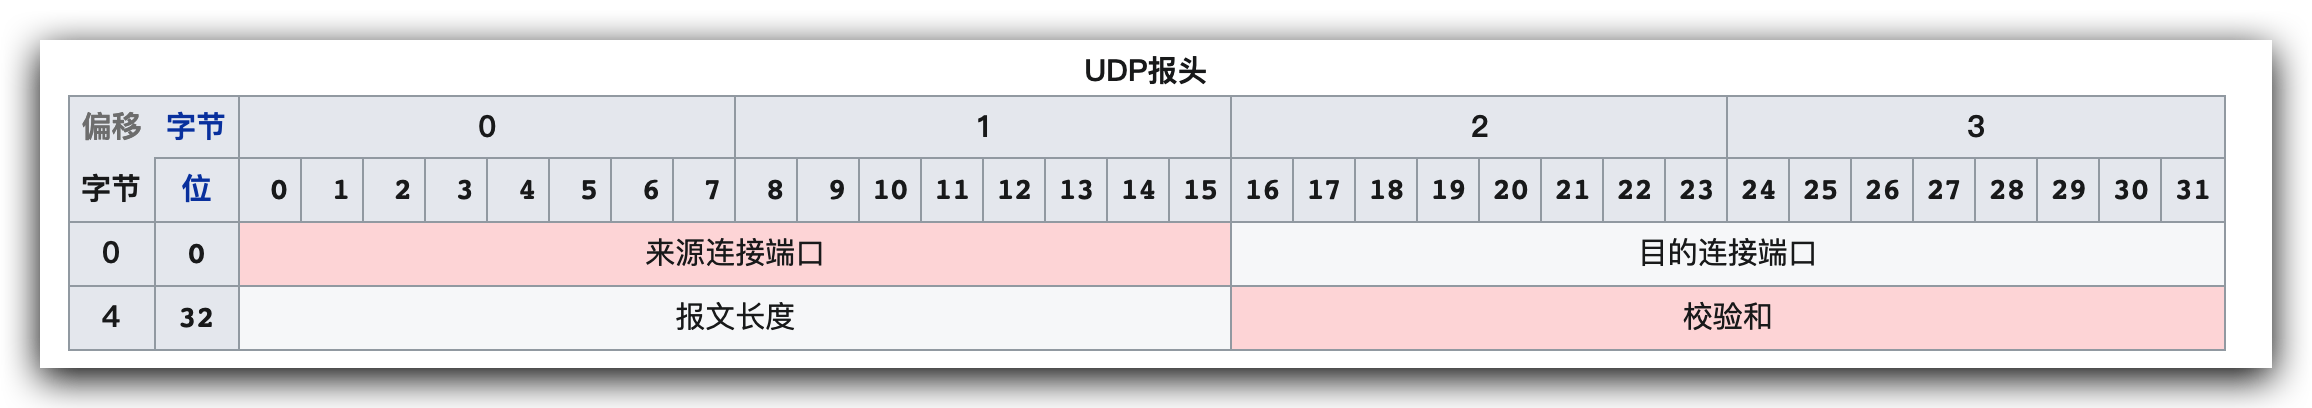 维基百科UDP